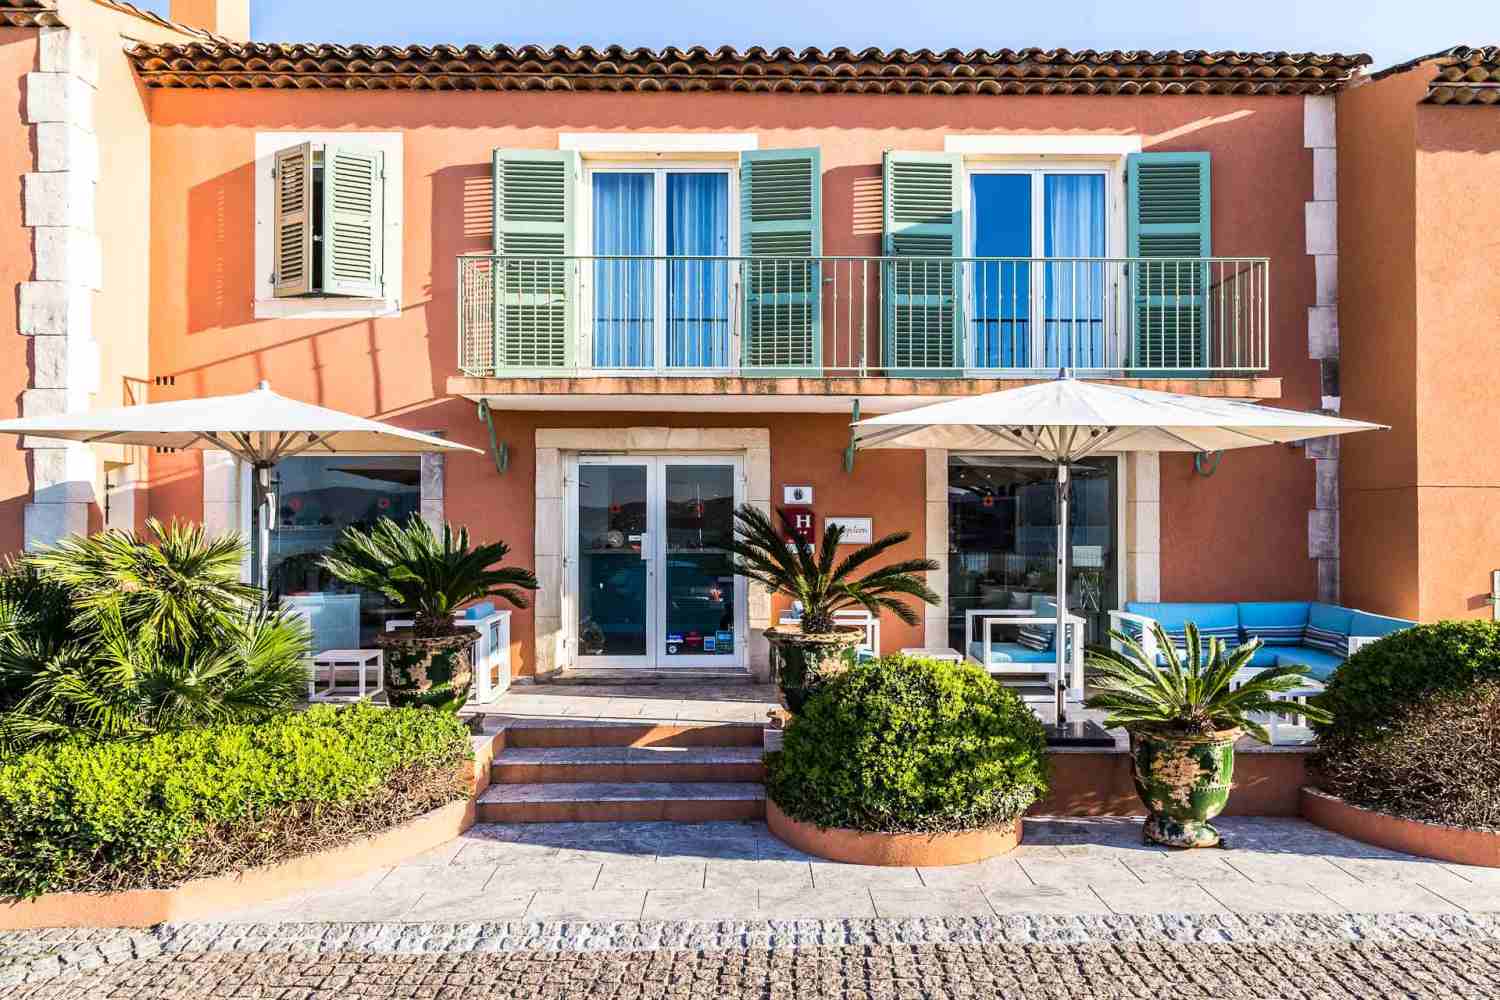 Hotel Le Mouillage St Tropez, Cote d'Azur - France